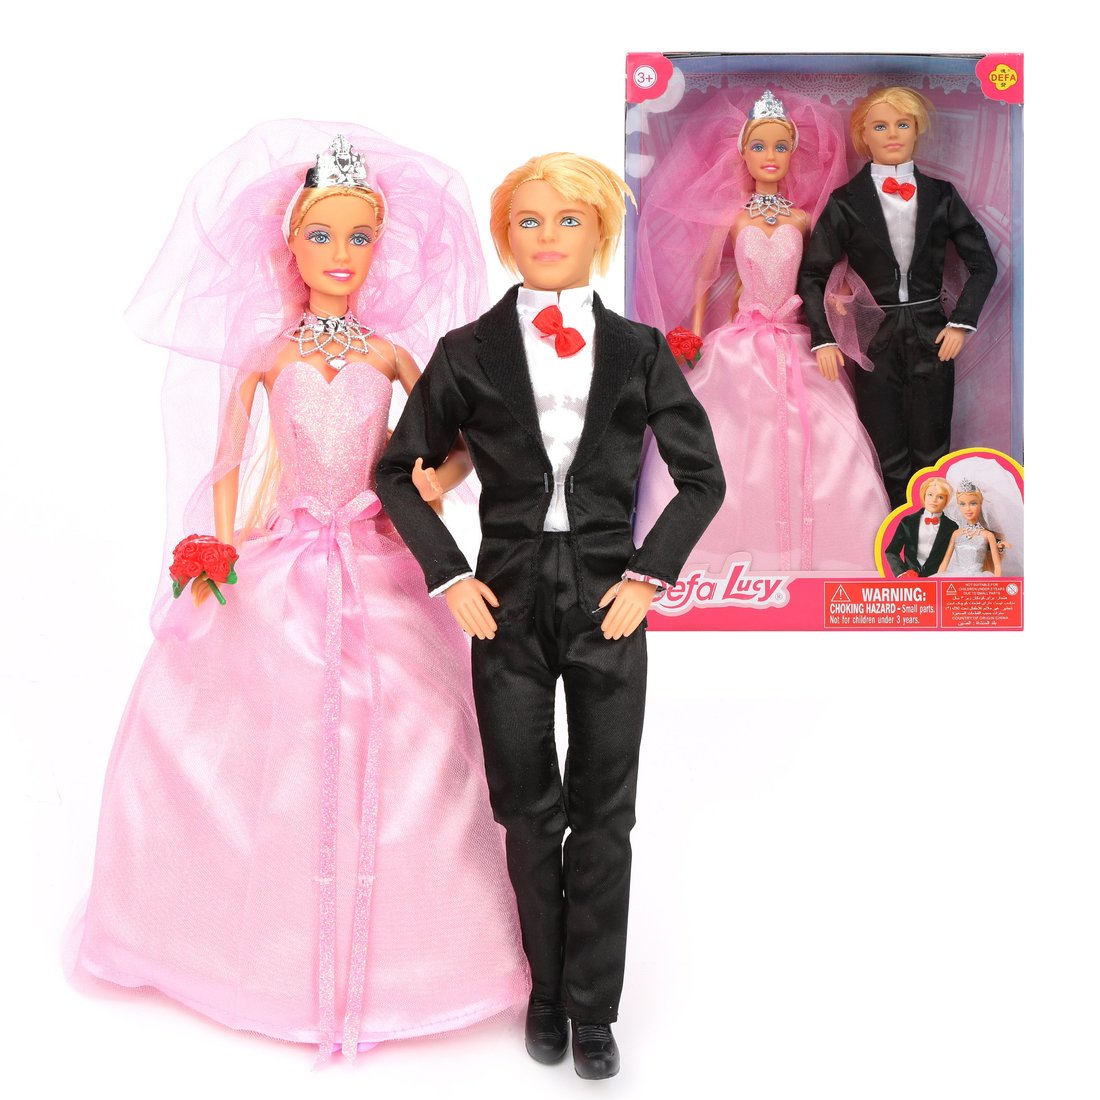 Игровой набор кукол Defa "Свадьба", 2 куклы, 3 предм.в компл., кор - изображение 1